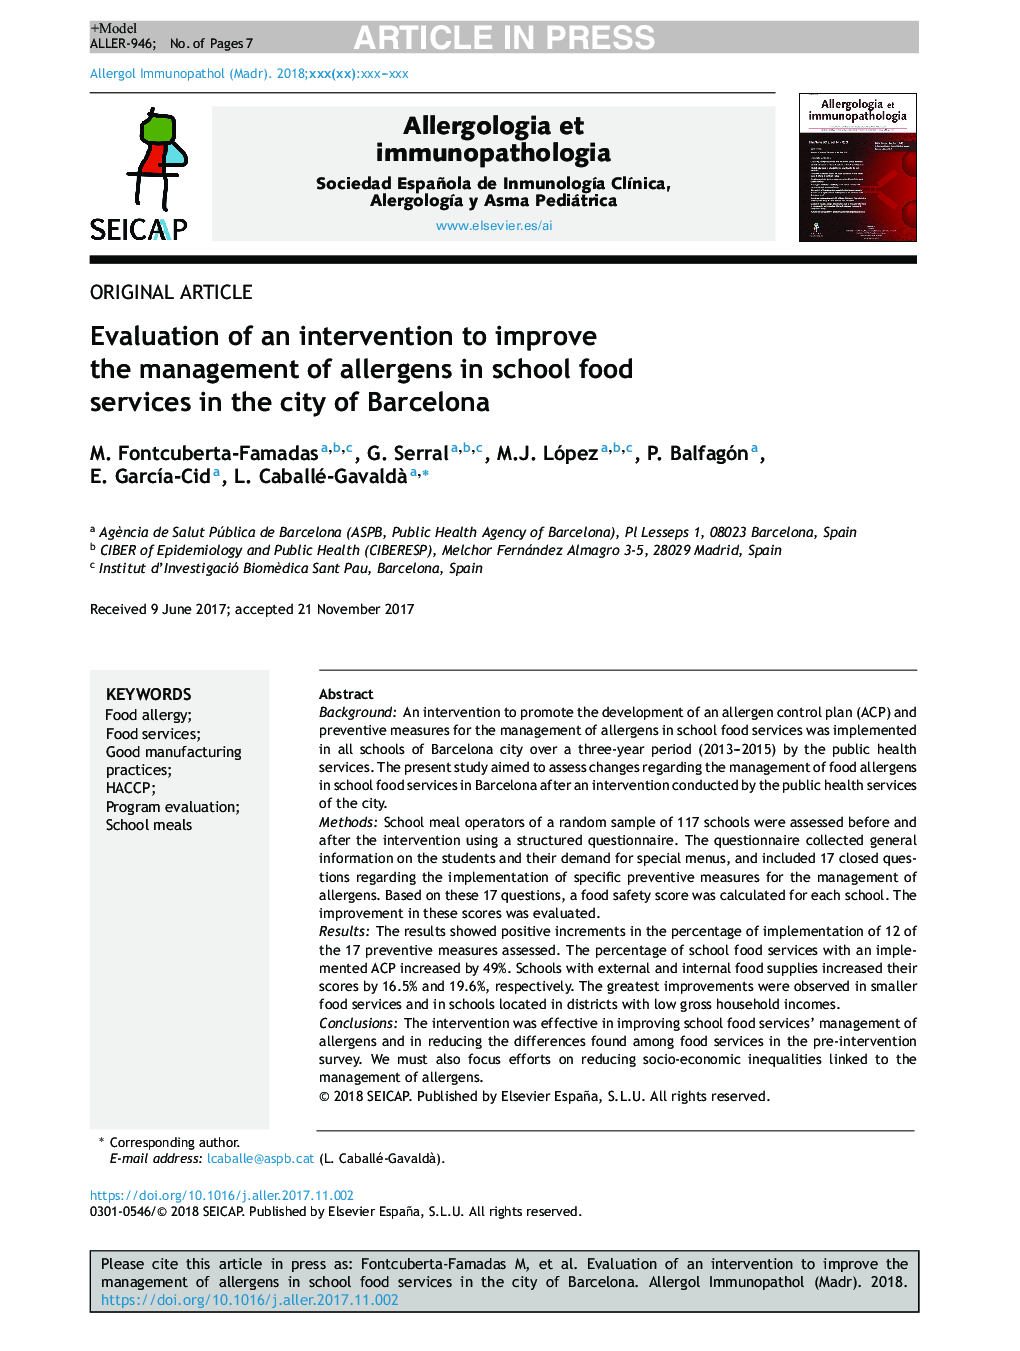 ارزیابی مداخلات برای بهبود مدیریت آلرژن ها در خدمات غذایی مدرسه در شهر بارسلونا 